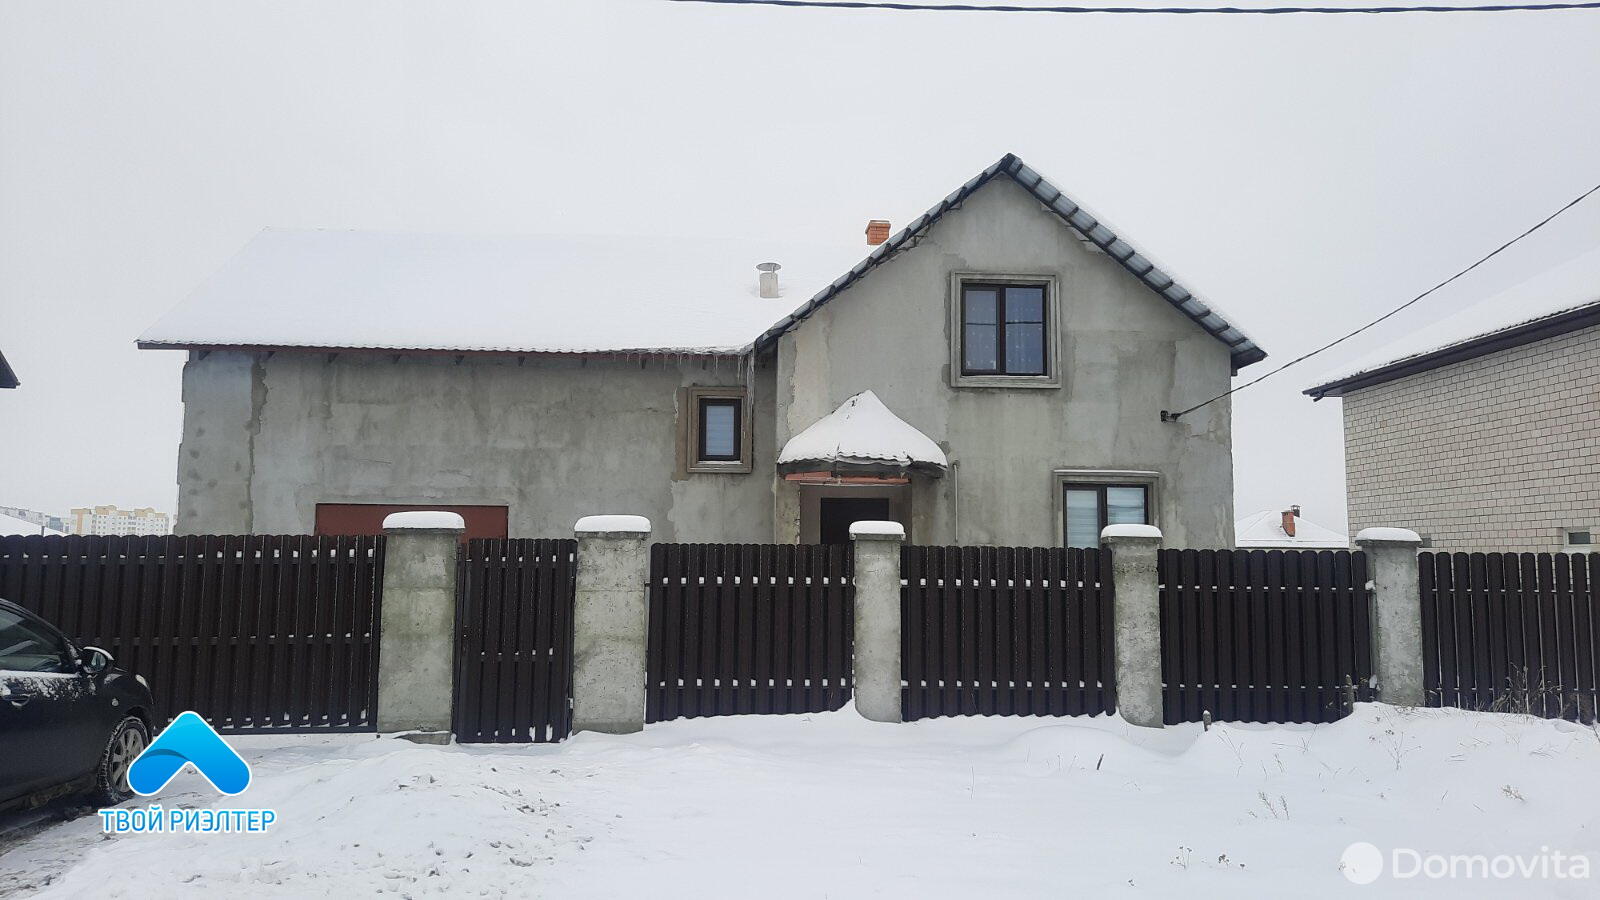 Продажа 2-этажного дома в Наровчизне, Гомельская область ул. Коростеньская, 96900USD, код 630058 - фото 1